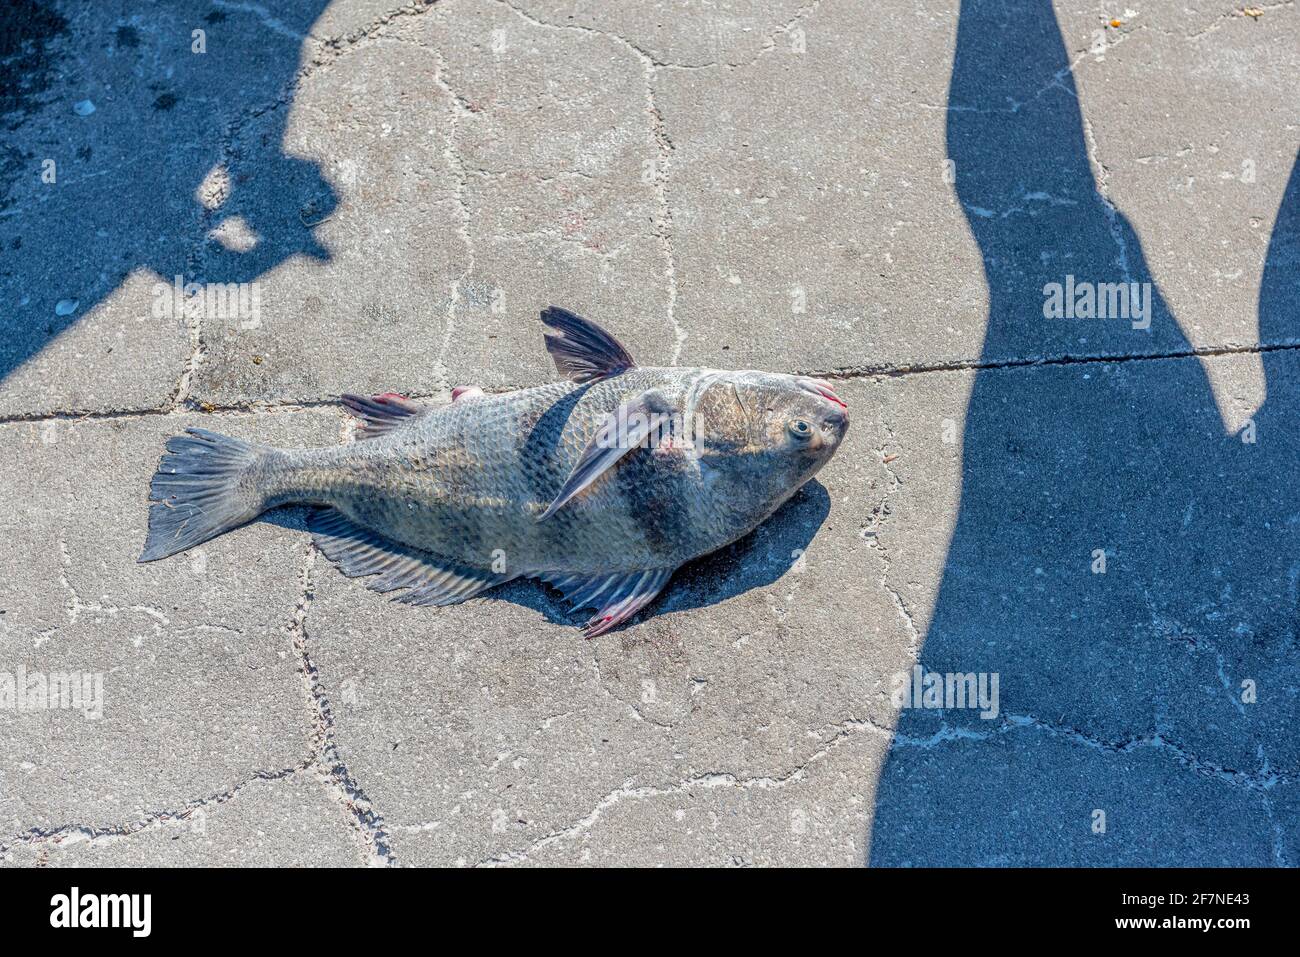 Un tamburo nero appena catturato che giace su cemento con le ombre del pescatore e la sua bobina e le ombre di un altro pescatore gambe che circondano il pesce. Foto Stock